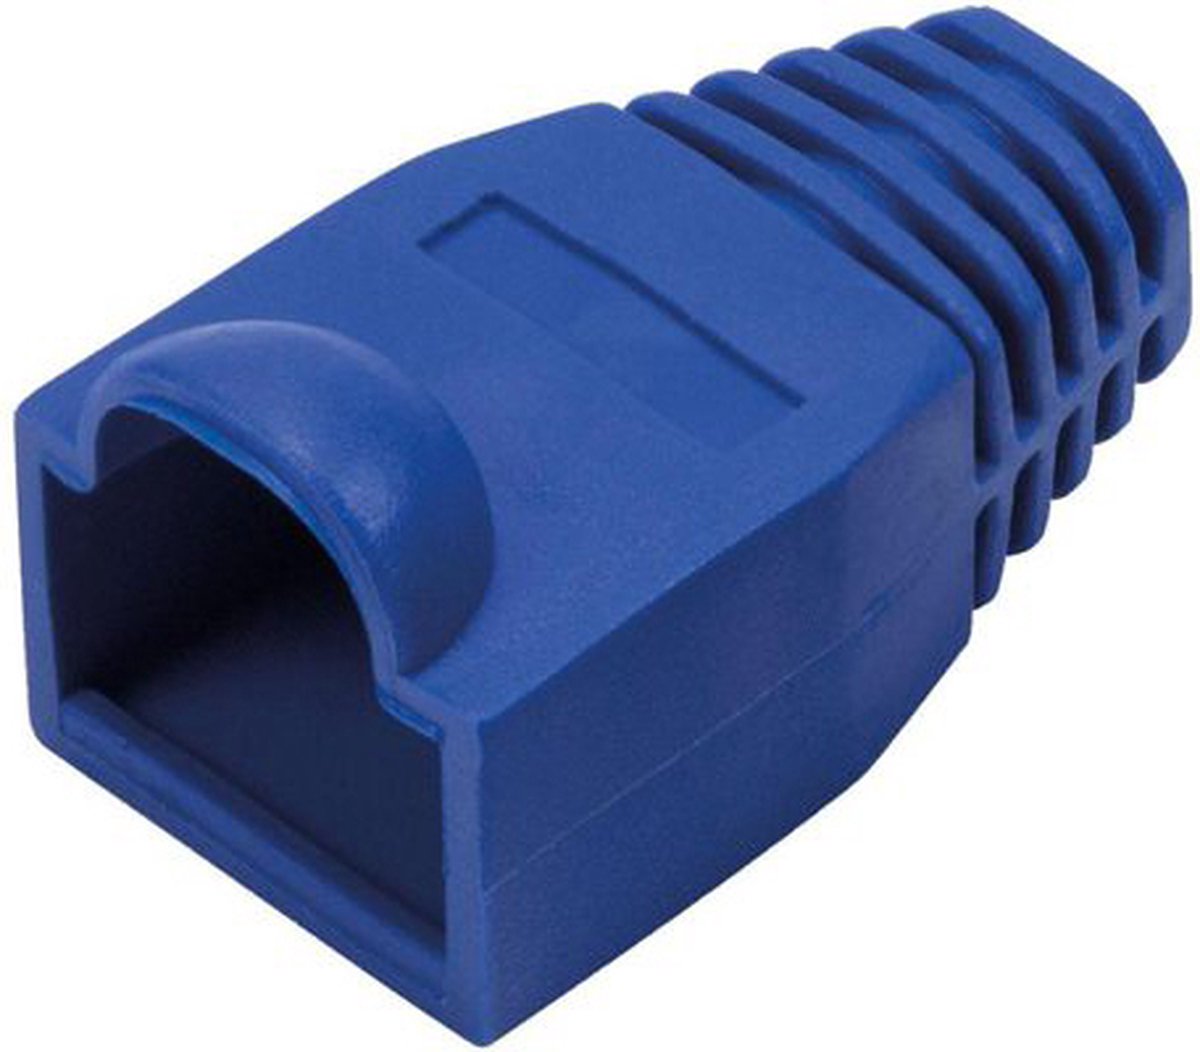 Netwerkplug huls voor RJ45 connectoren - kabel tot 6 mm - 10 stuks / Blauw